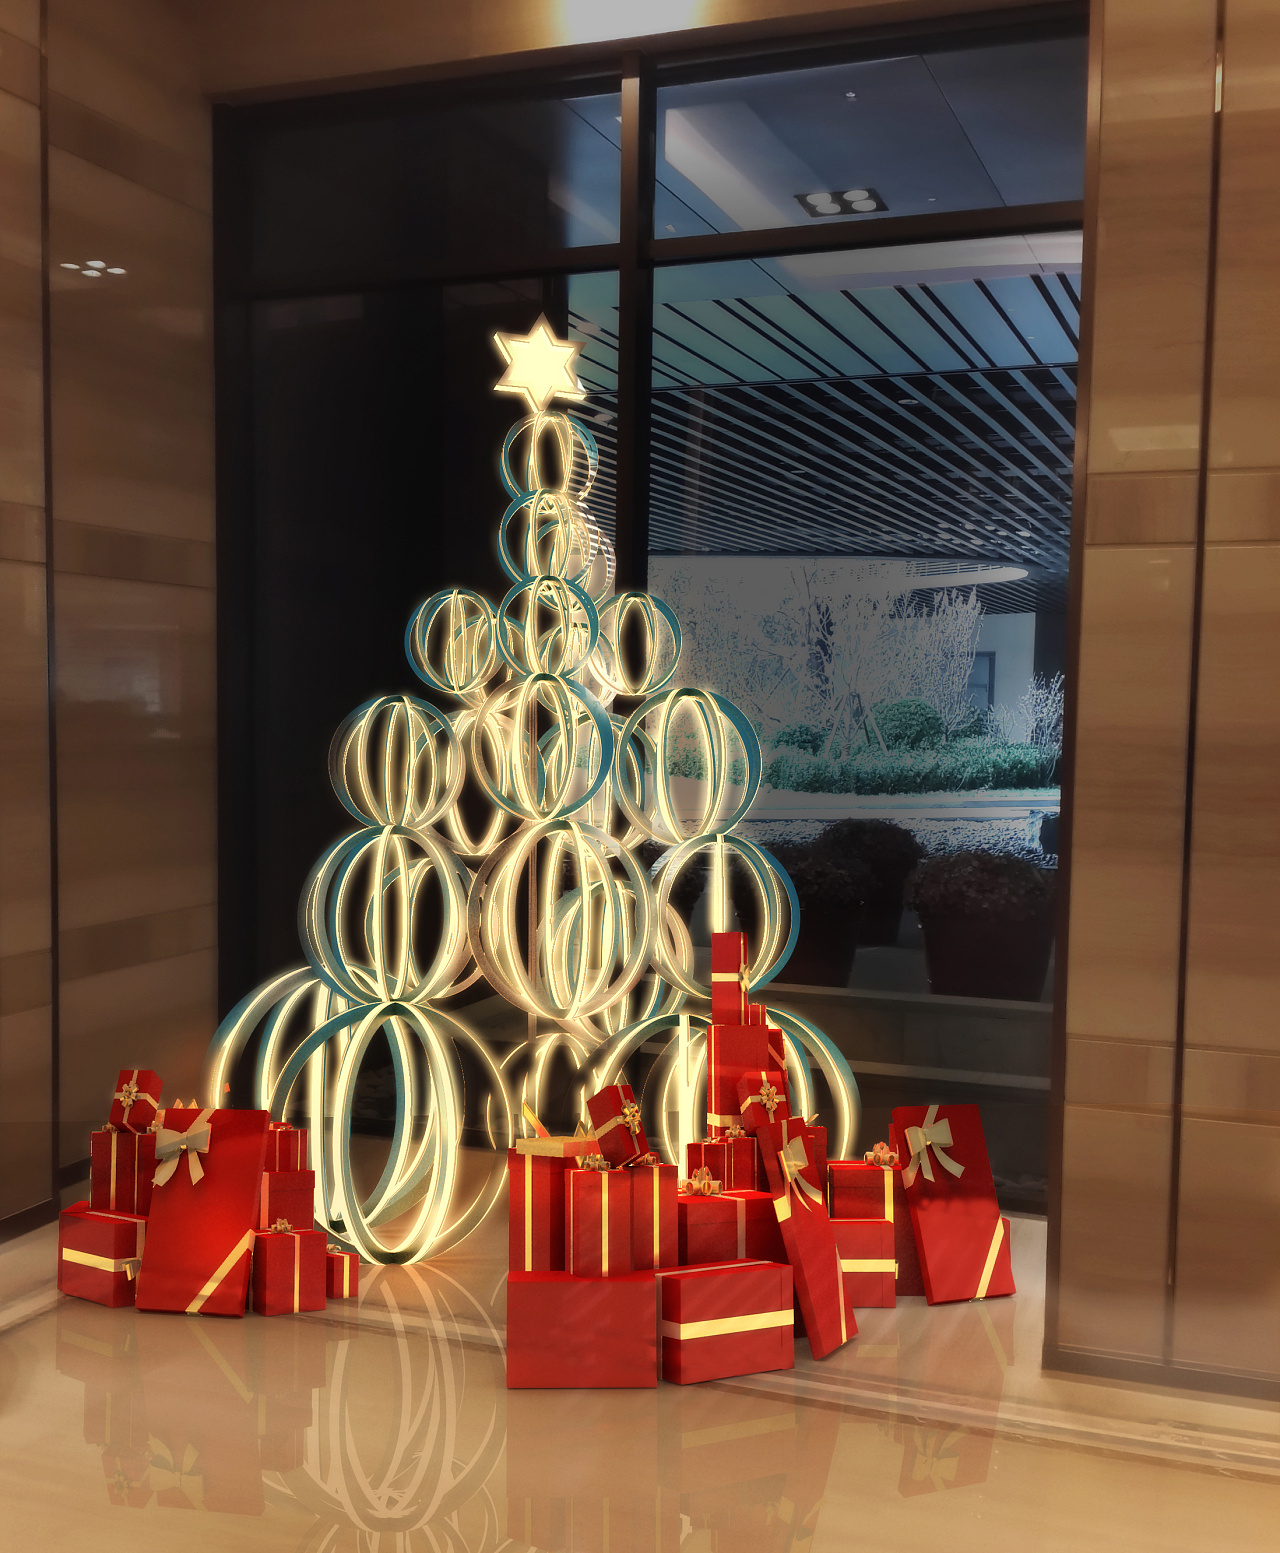 在室外装饰的圣诞树与哥特式大教堂 库存图片. 图片 包括有 庆祝, 寺庙, 竹子, 冷杉, 宗教信仰, 结构树 - 162928891